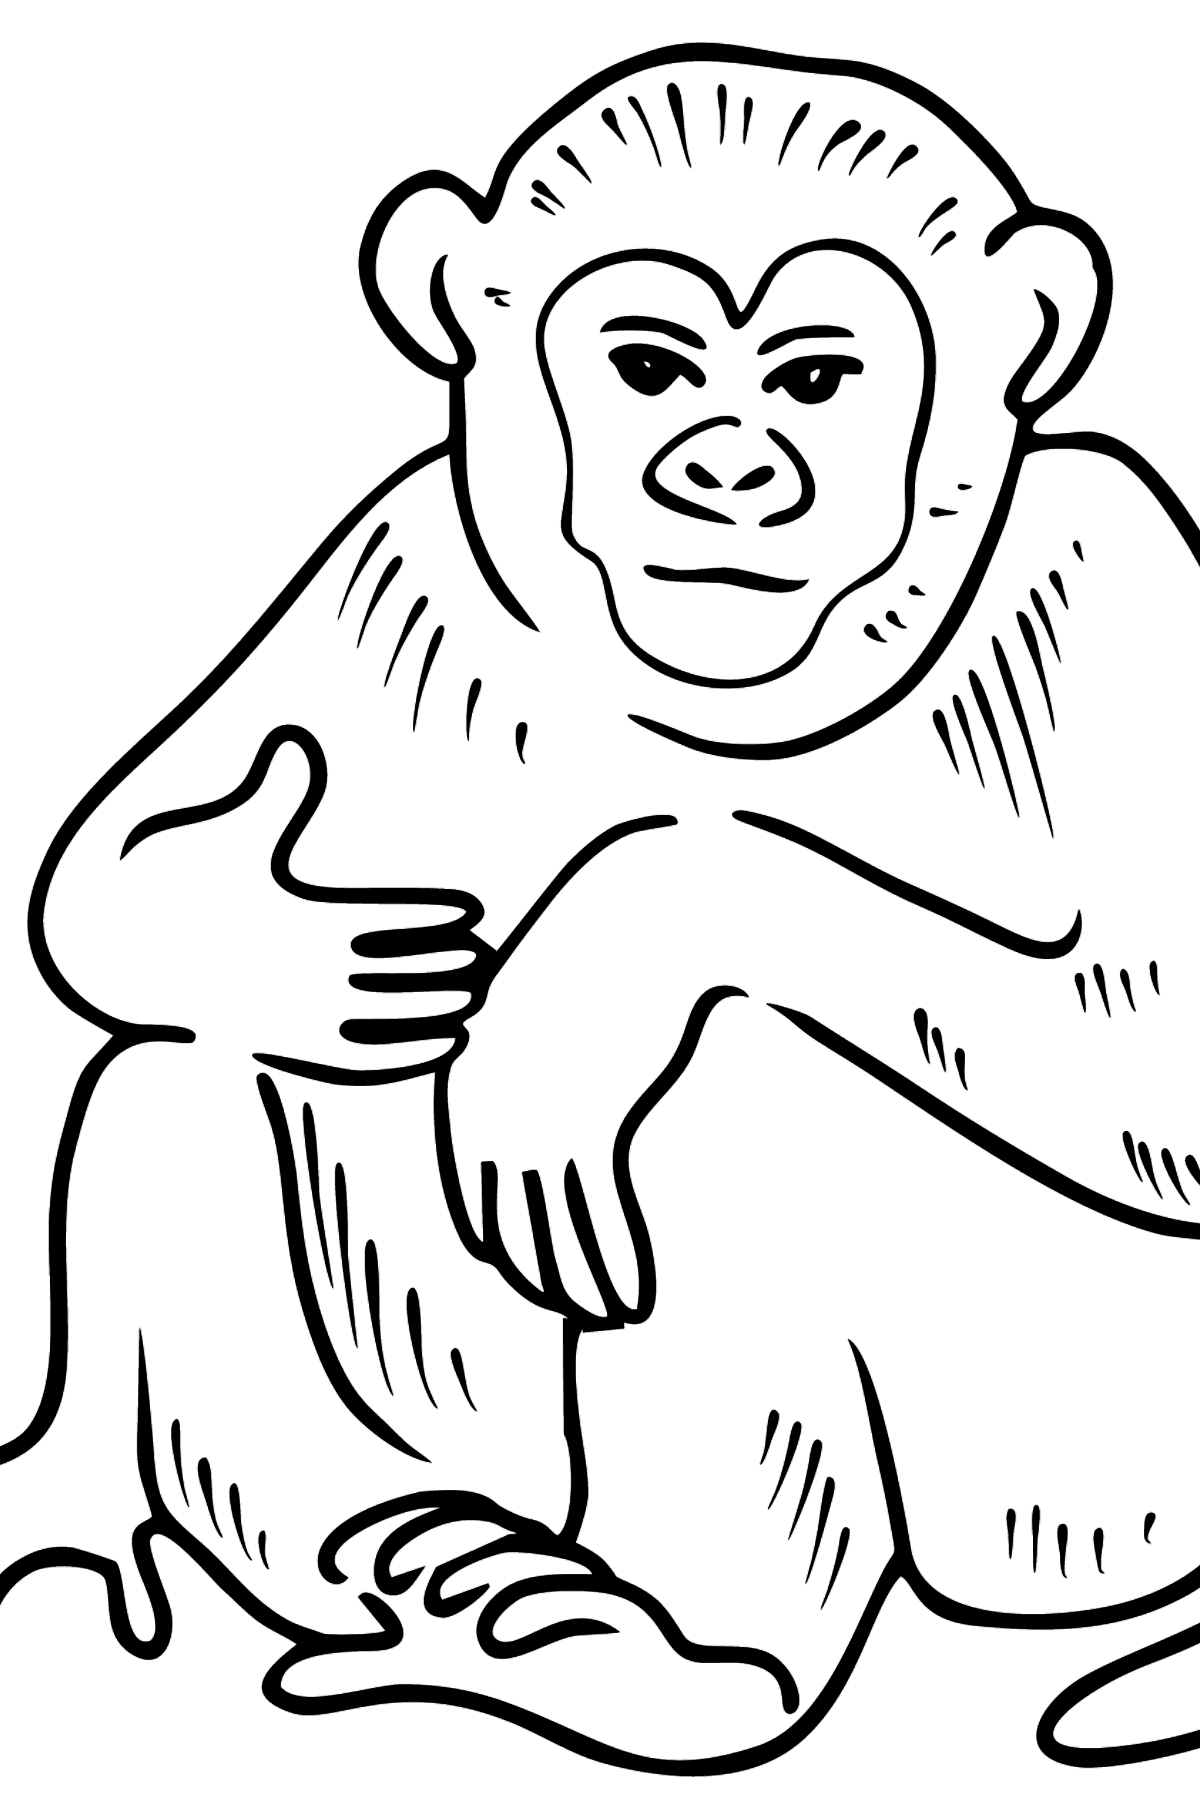 Affe Ausmalbild - Malvorlagen für Kinder